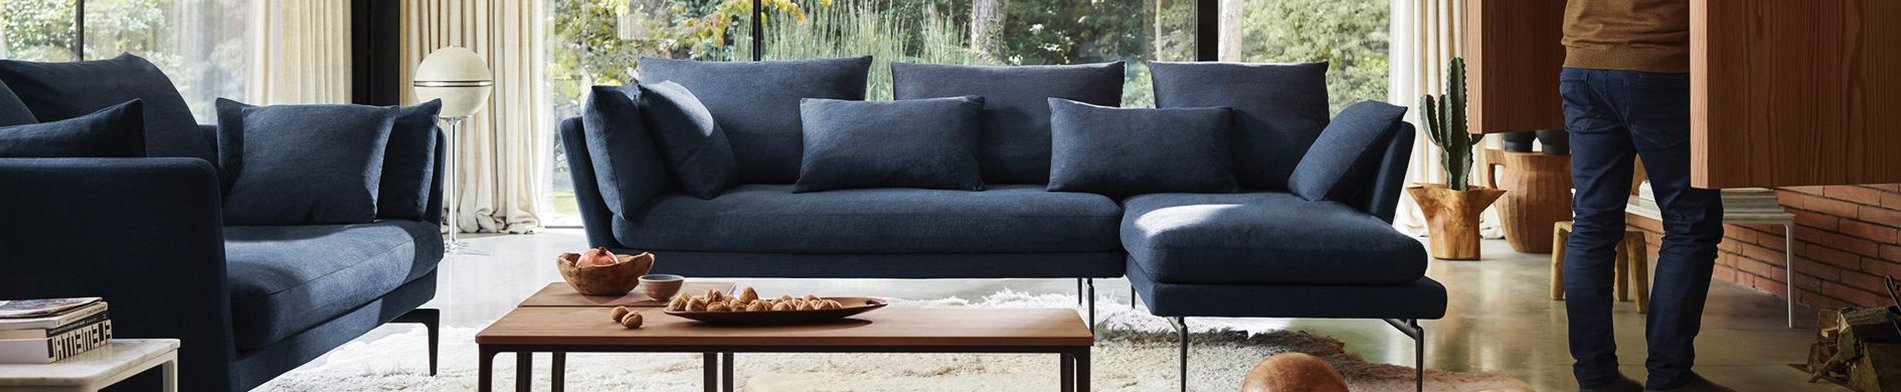 Design meubels | Design meubel kopen? | Flinders